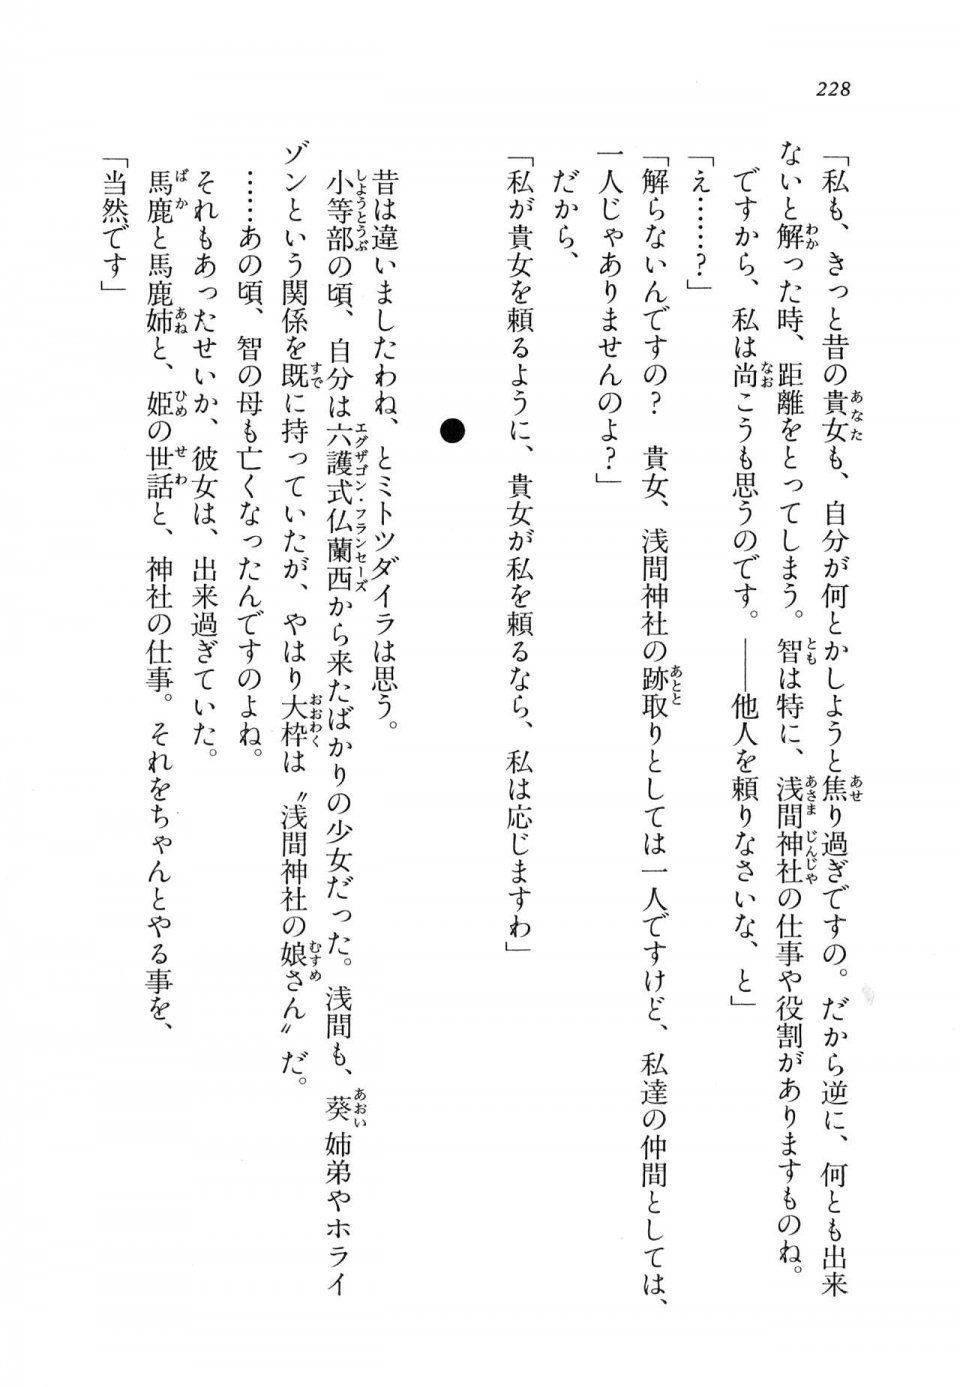 Kyoukai Senjou no Horizon LN Vol 11(5A) - Photo #228